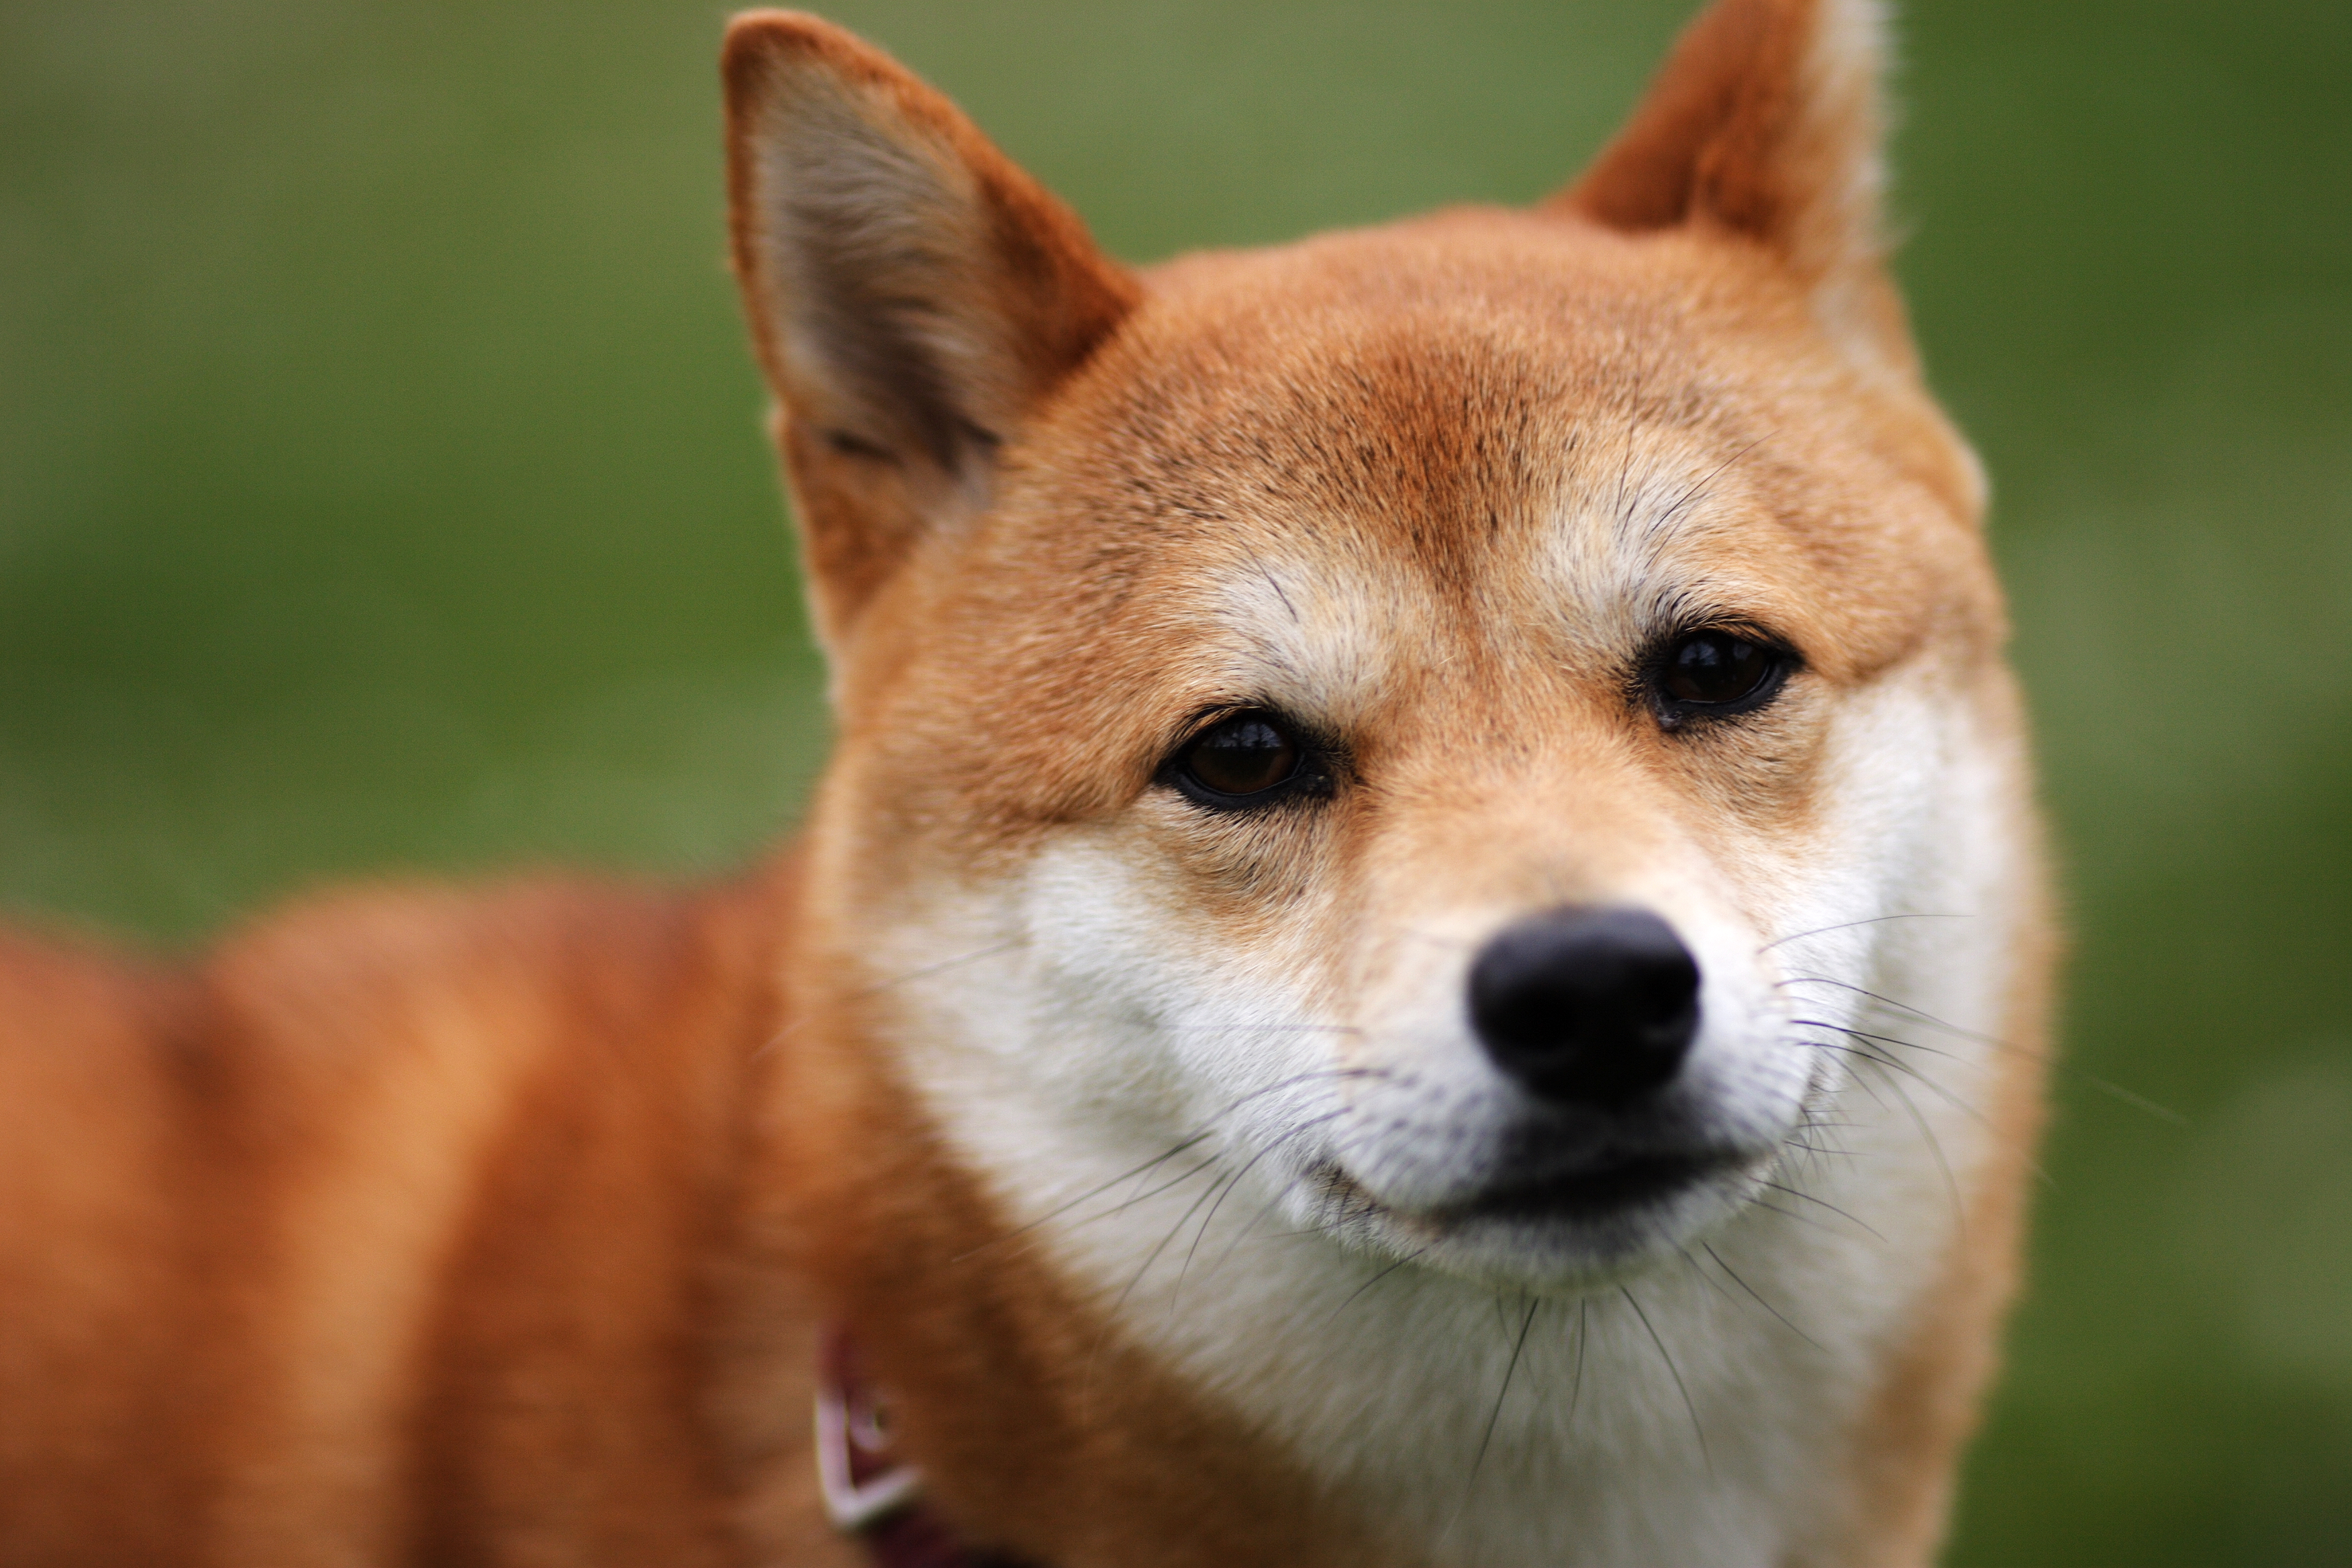 フリー画像 動物写真 哺乳類 イヌ科 犬 イヌ 柴犬 シバイヌ 画像素材なら 無料 フリー写真素材のフリーフォト